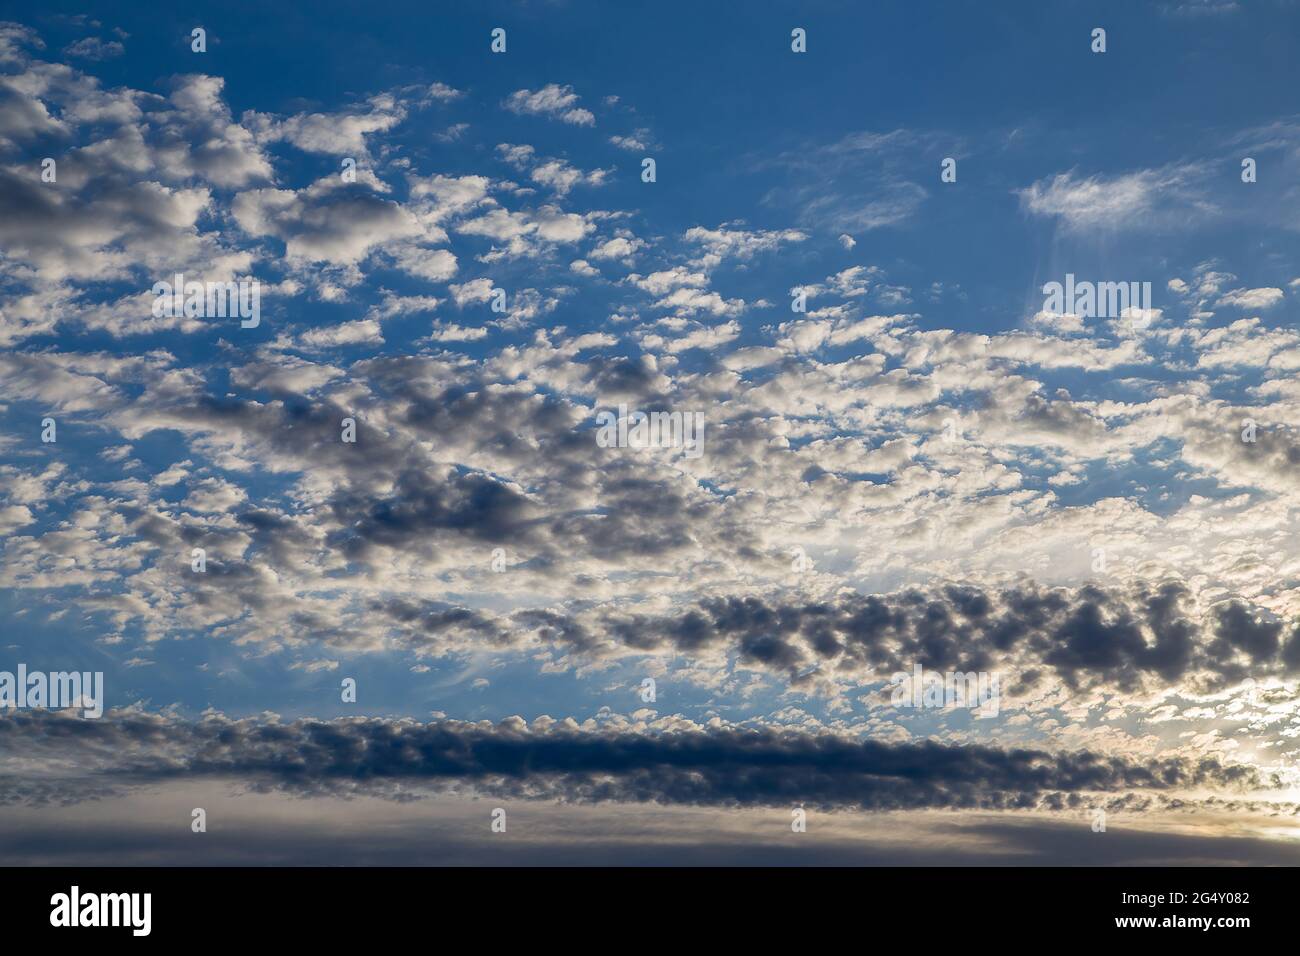 Schöner blauer Himmel mit weißen Zirruswolken bei Sonnenuntergang. Himmelspanorama für Bildschirmschoner, Postkarten, Kalender, Präsentationen. Tiefer Punkt bei Weitwinkel. Warme Frühlings- oder Sommerabende. Stockfoto